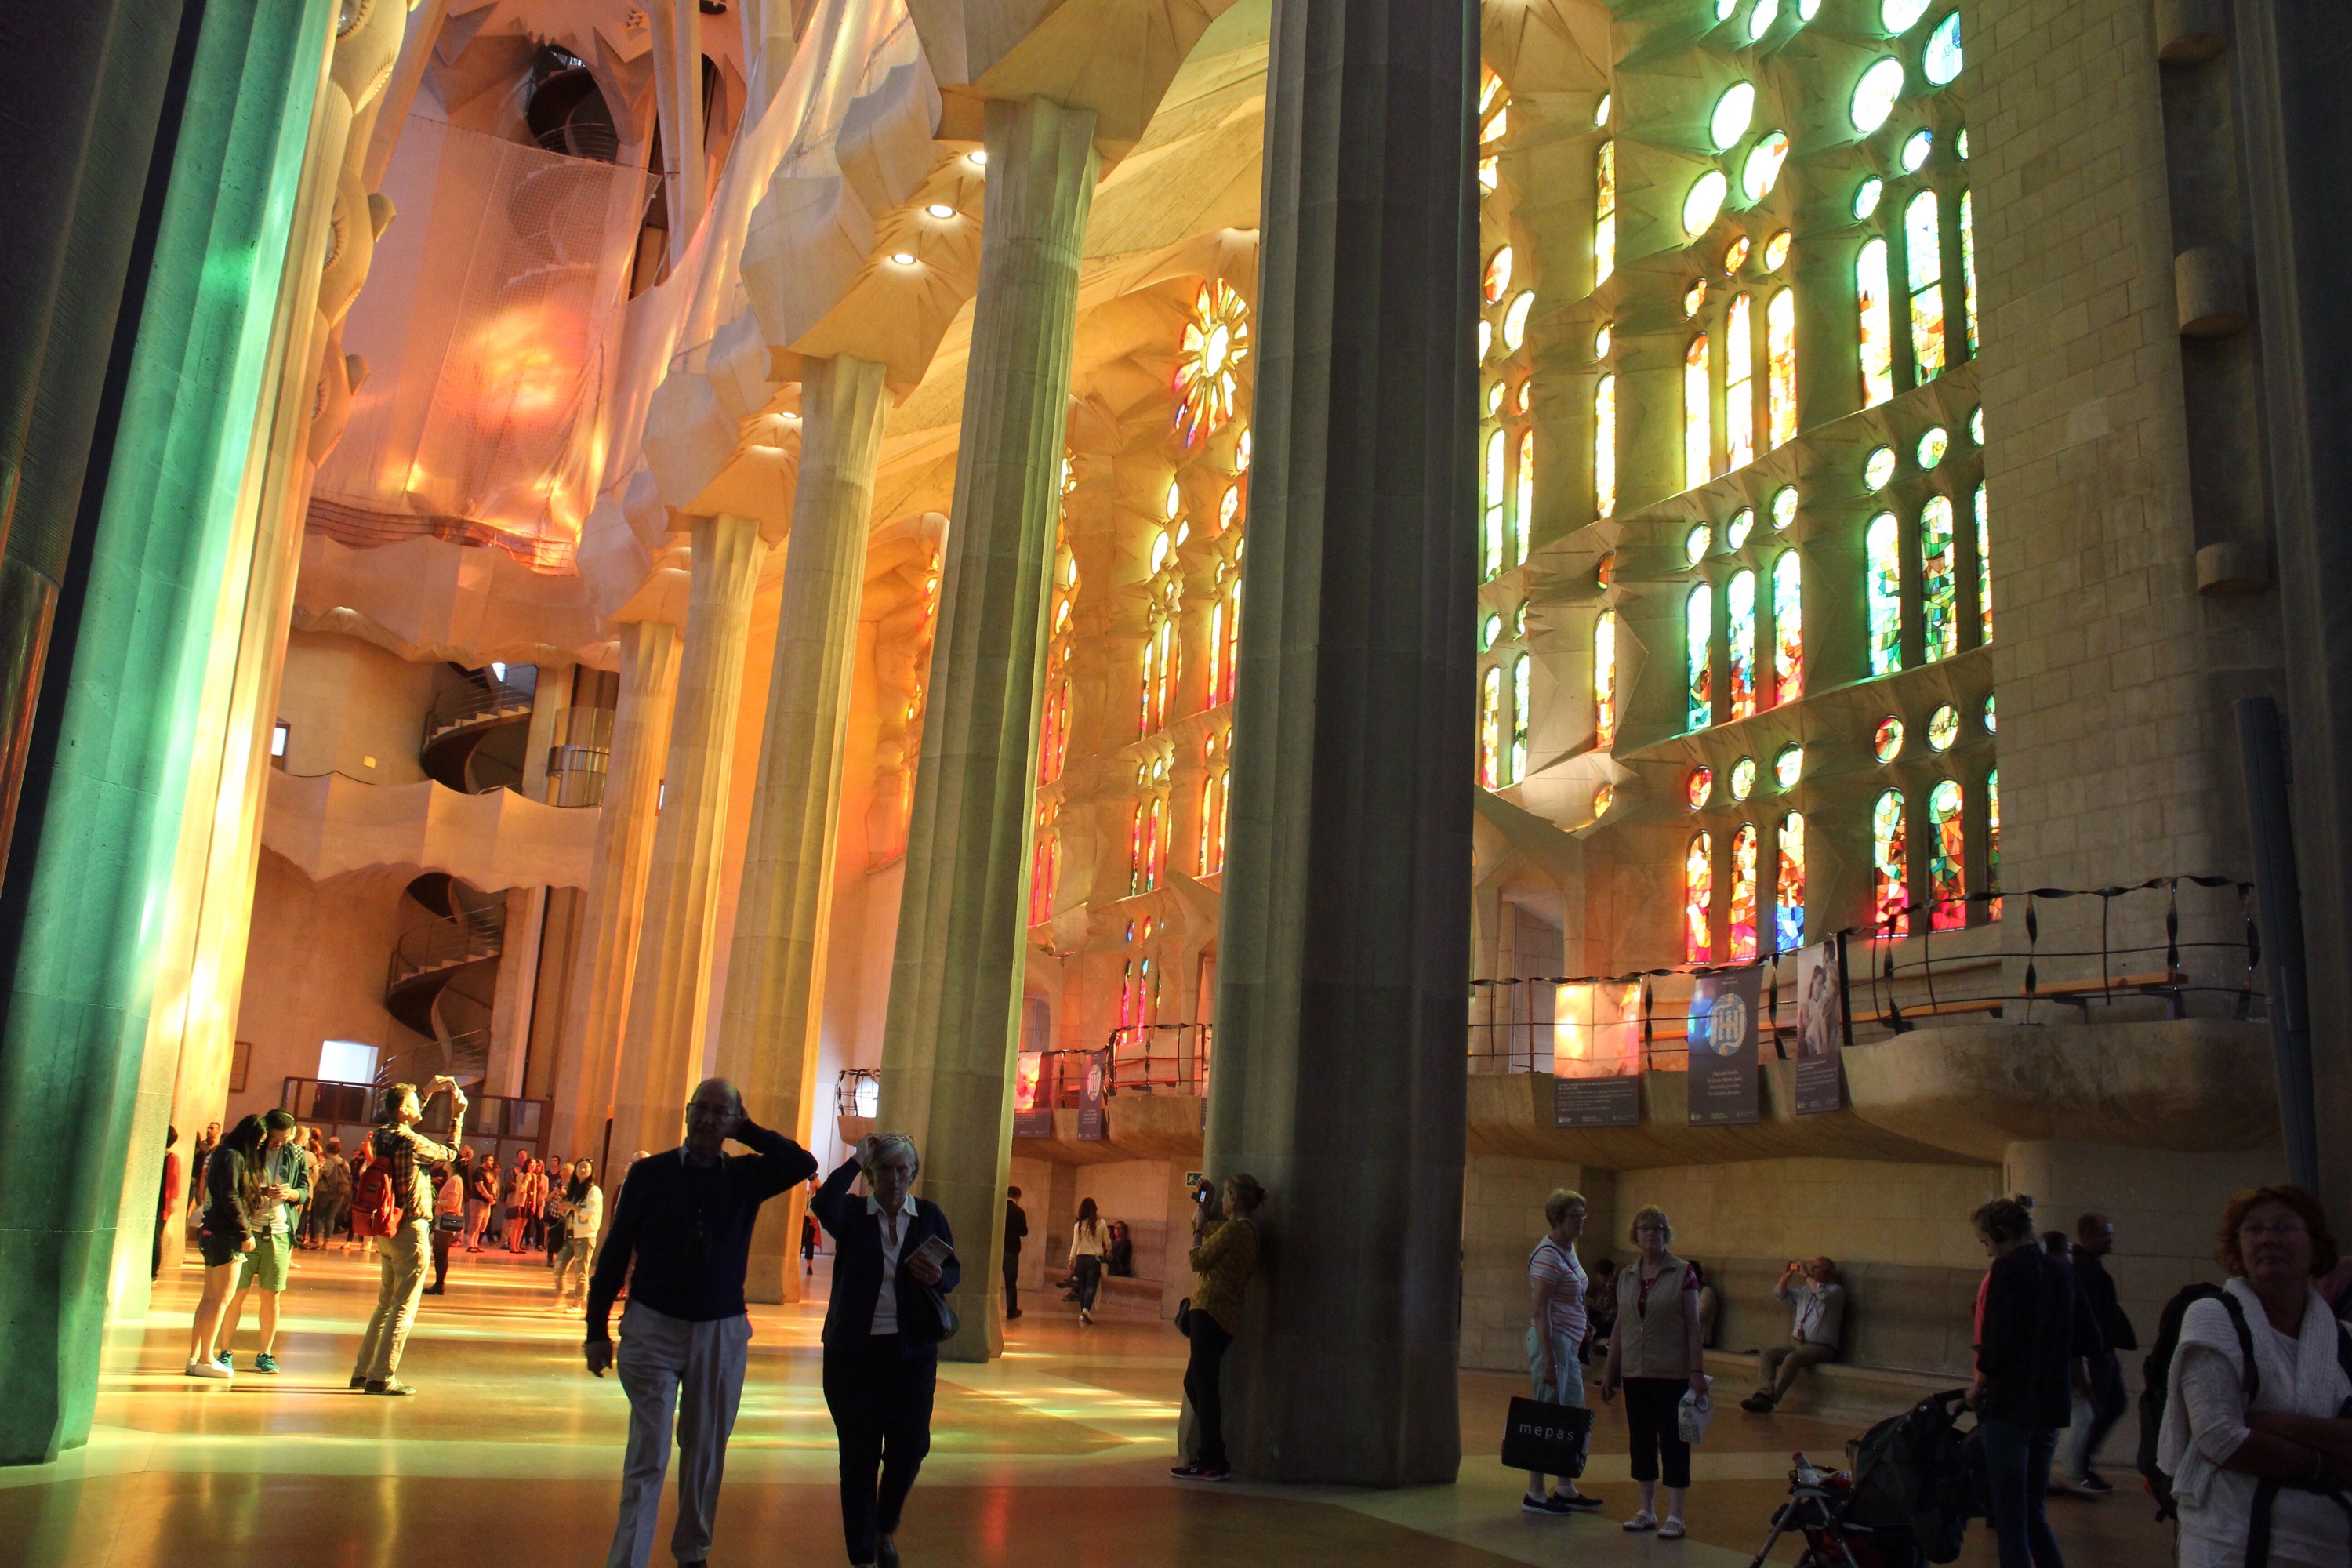 Color from windows in Sagrada Familia in Barcelona, Spain